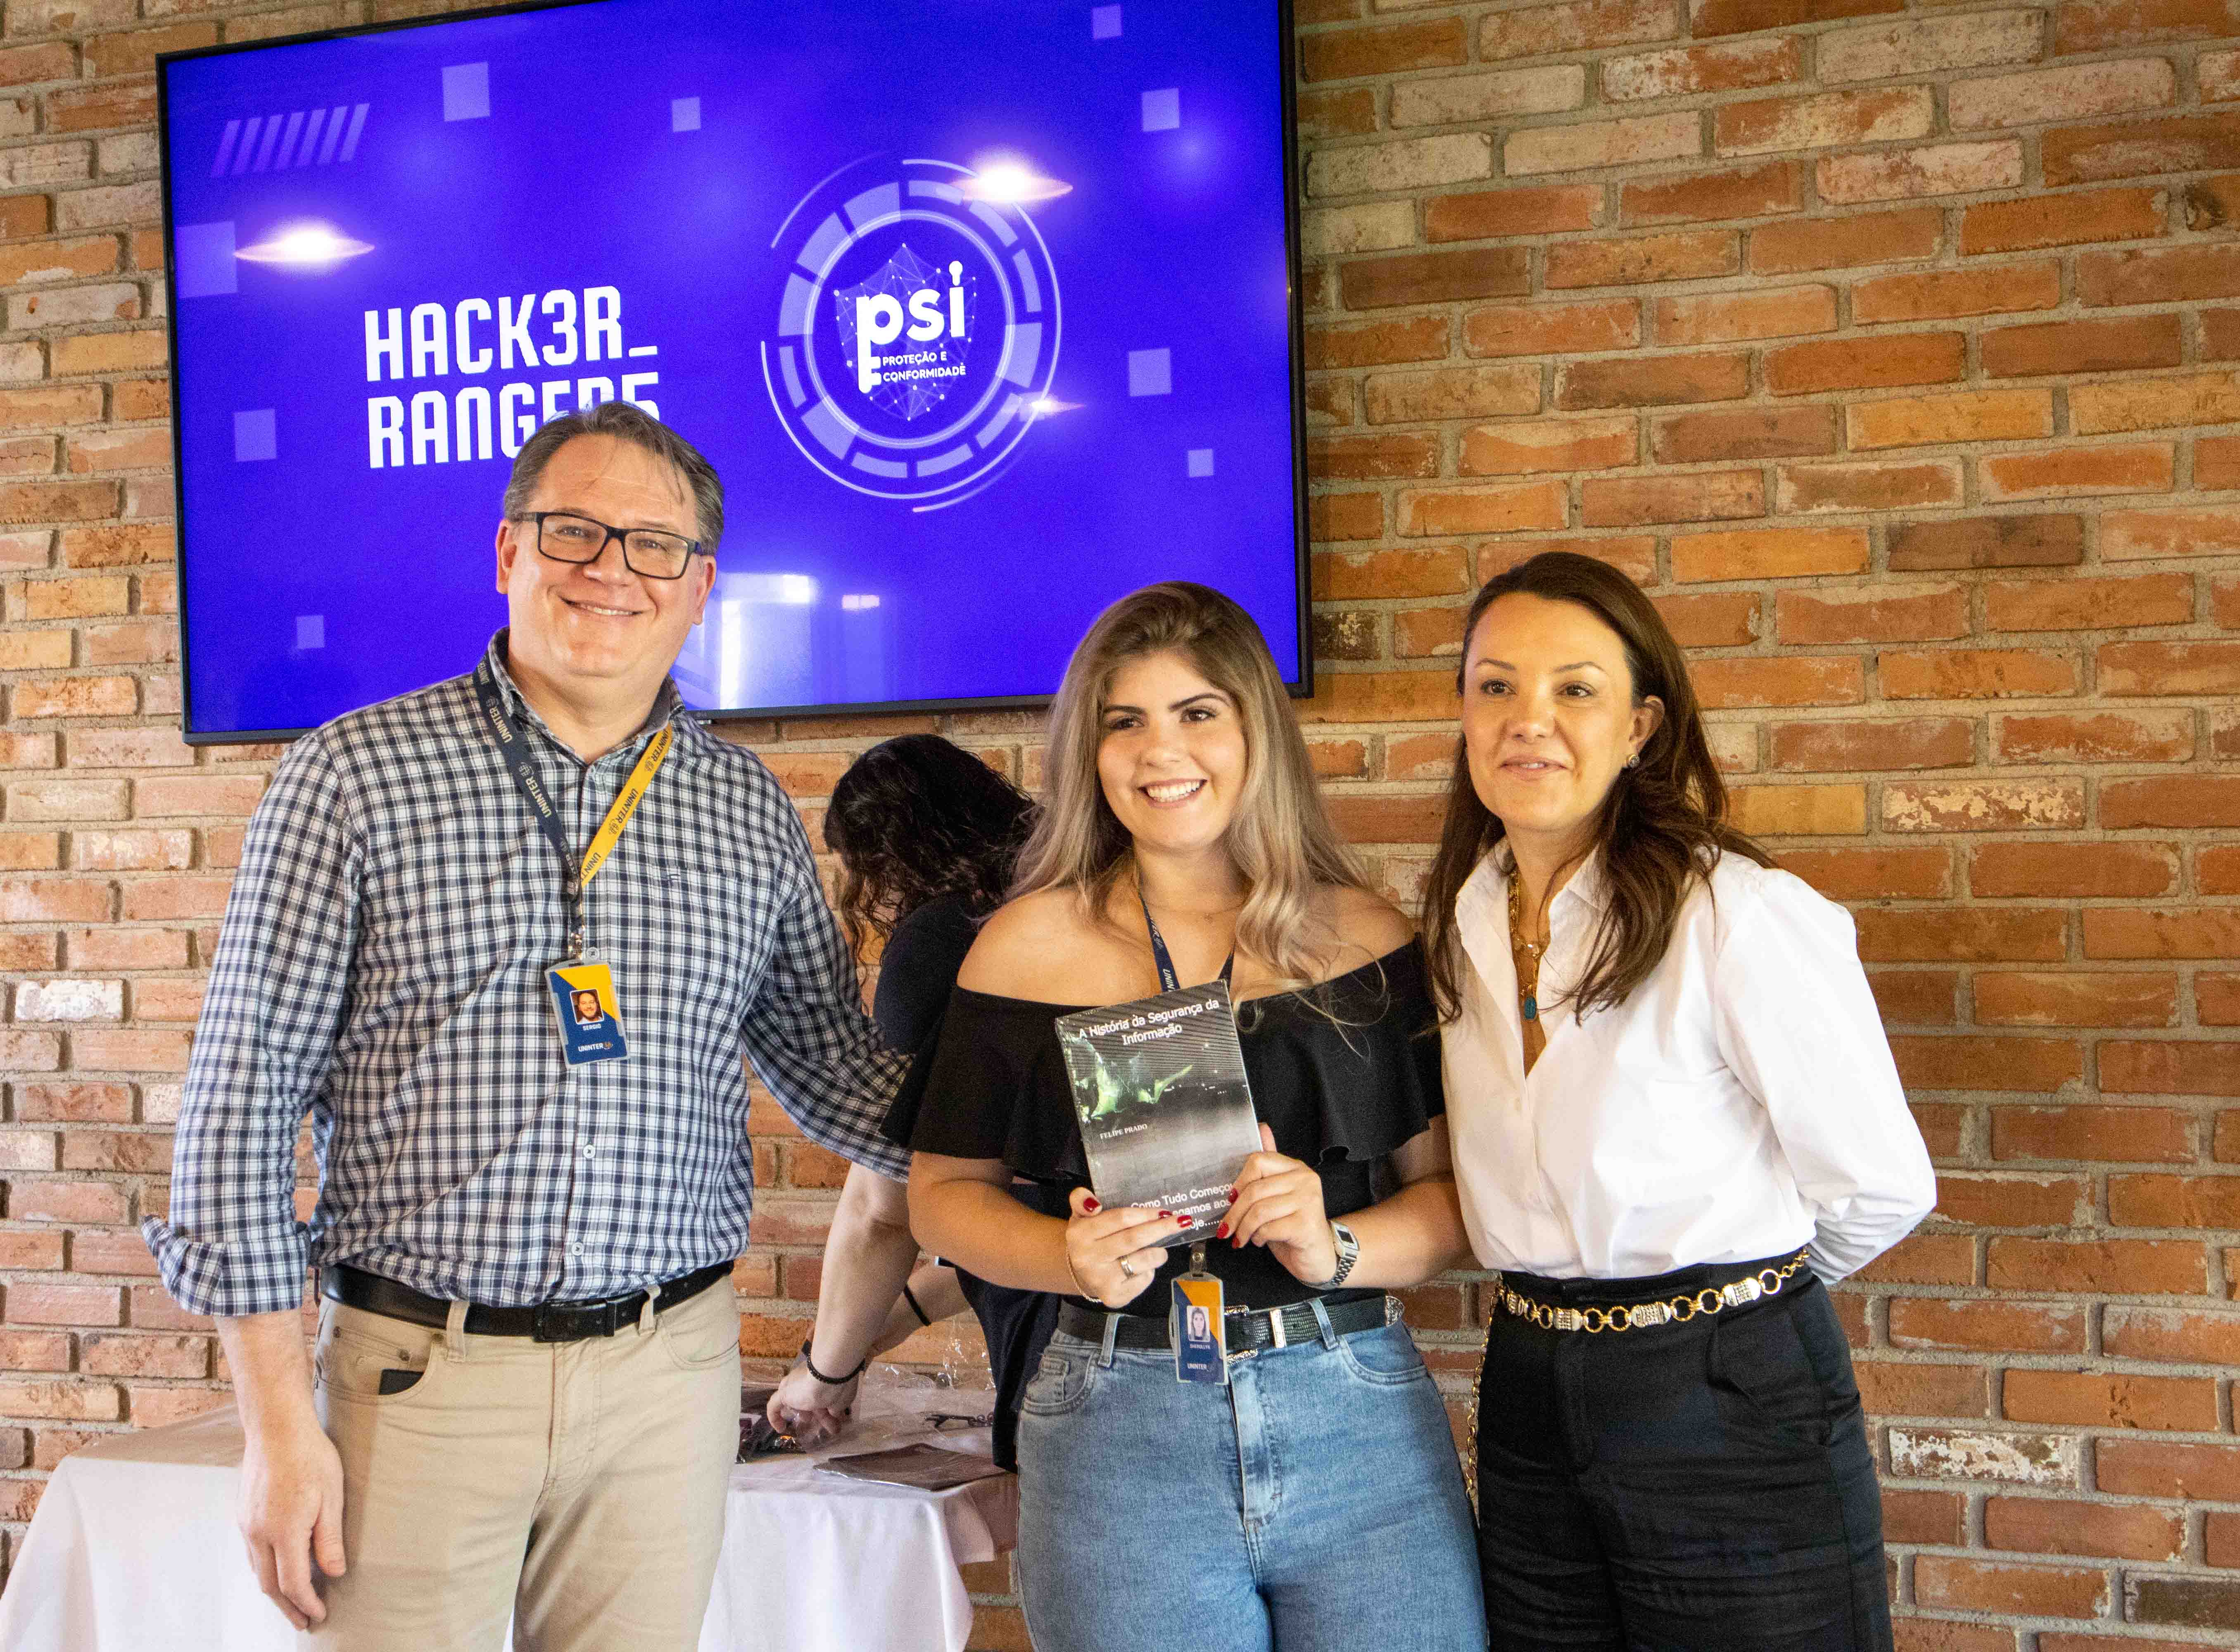 Uninter premia vencedores da terceira temporada do Hacker Rangers